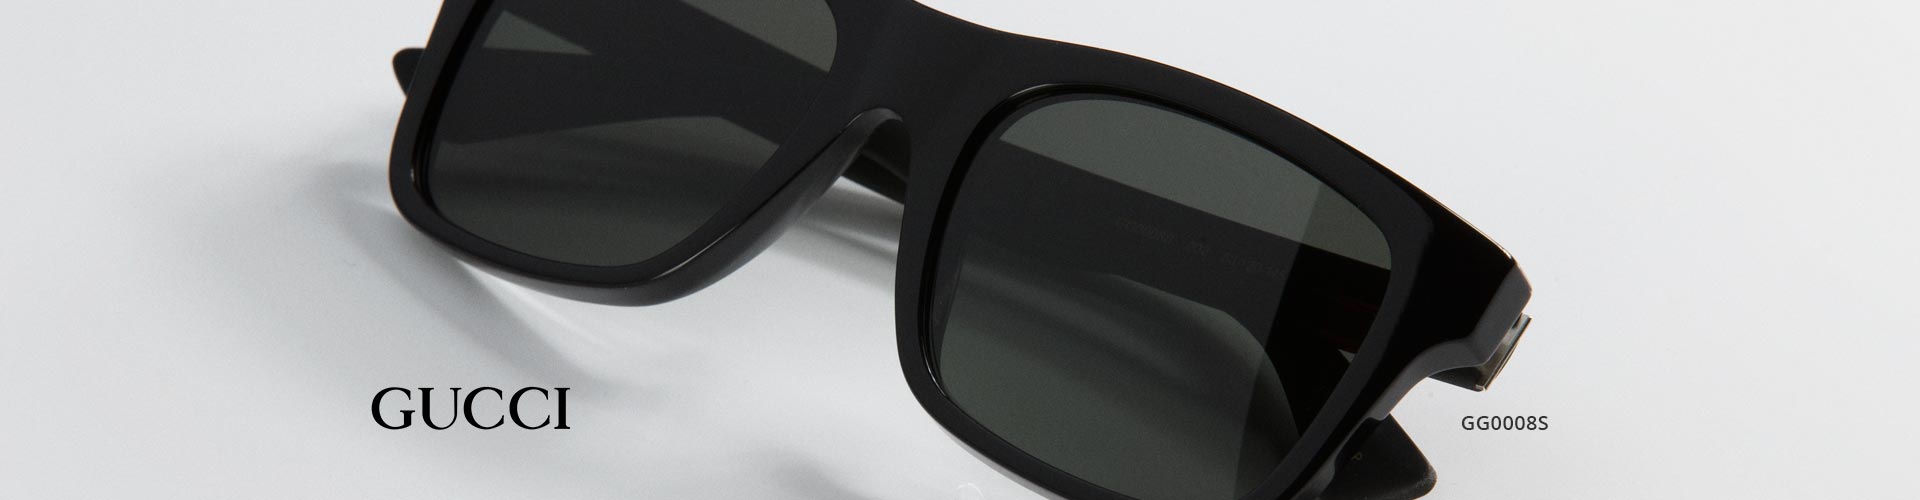 Shop Gucci Prescription Sunglasses - model GG0008S featured